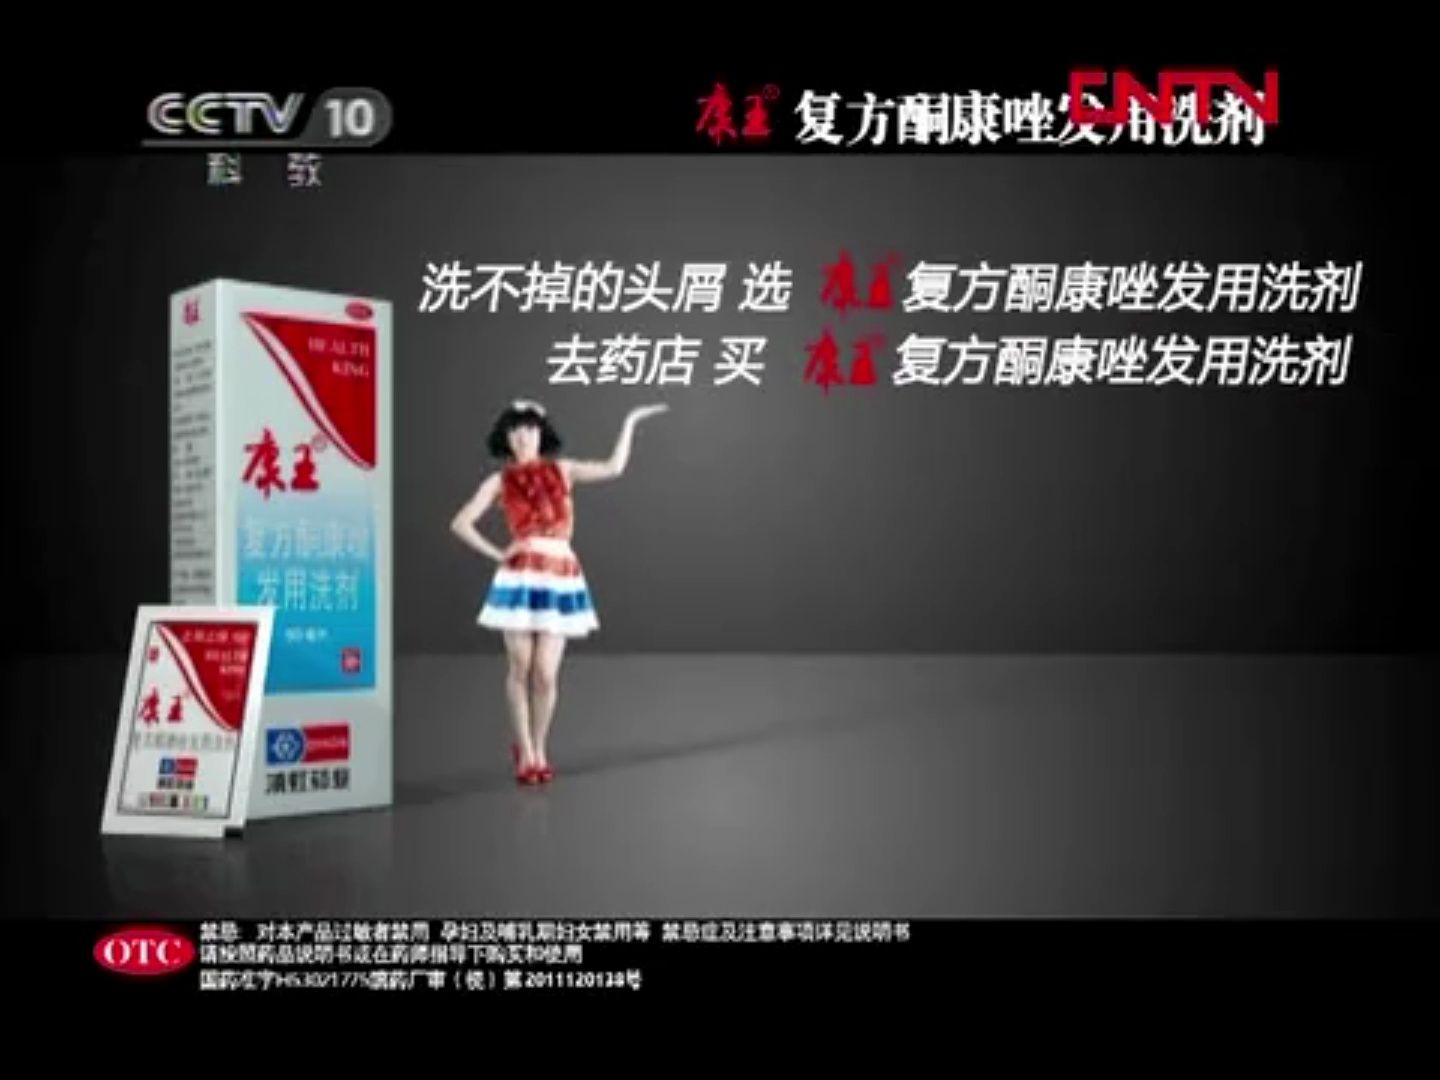 【广播电视】CCTV-10《自然传奇》间场广告三则+ED（2012.2.8）